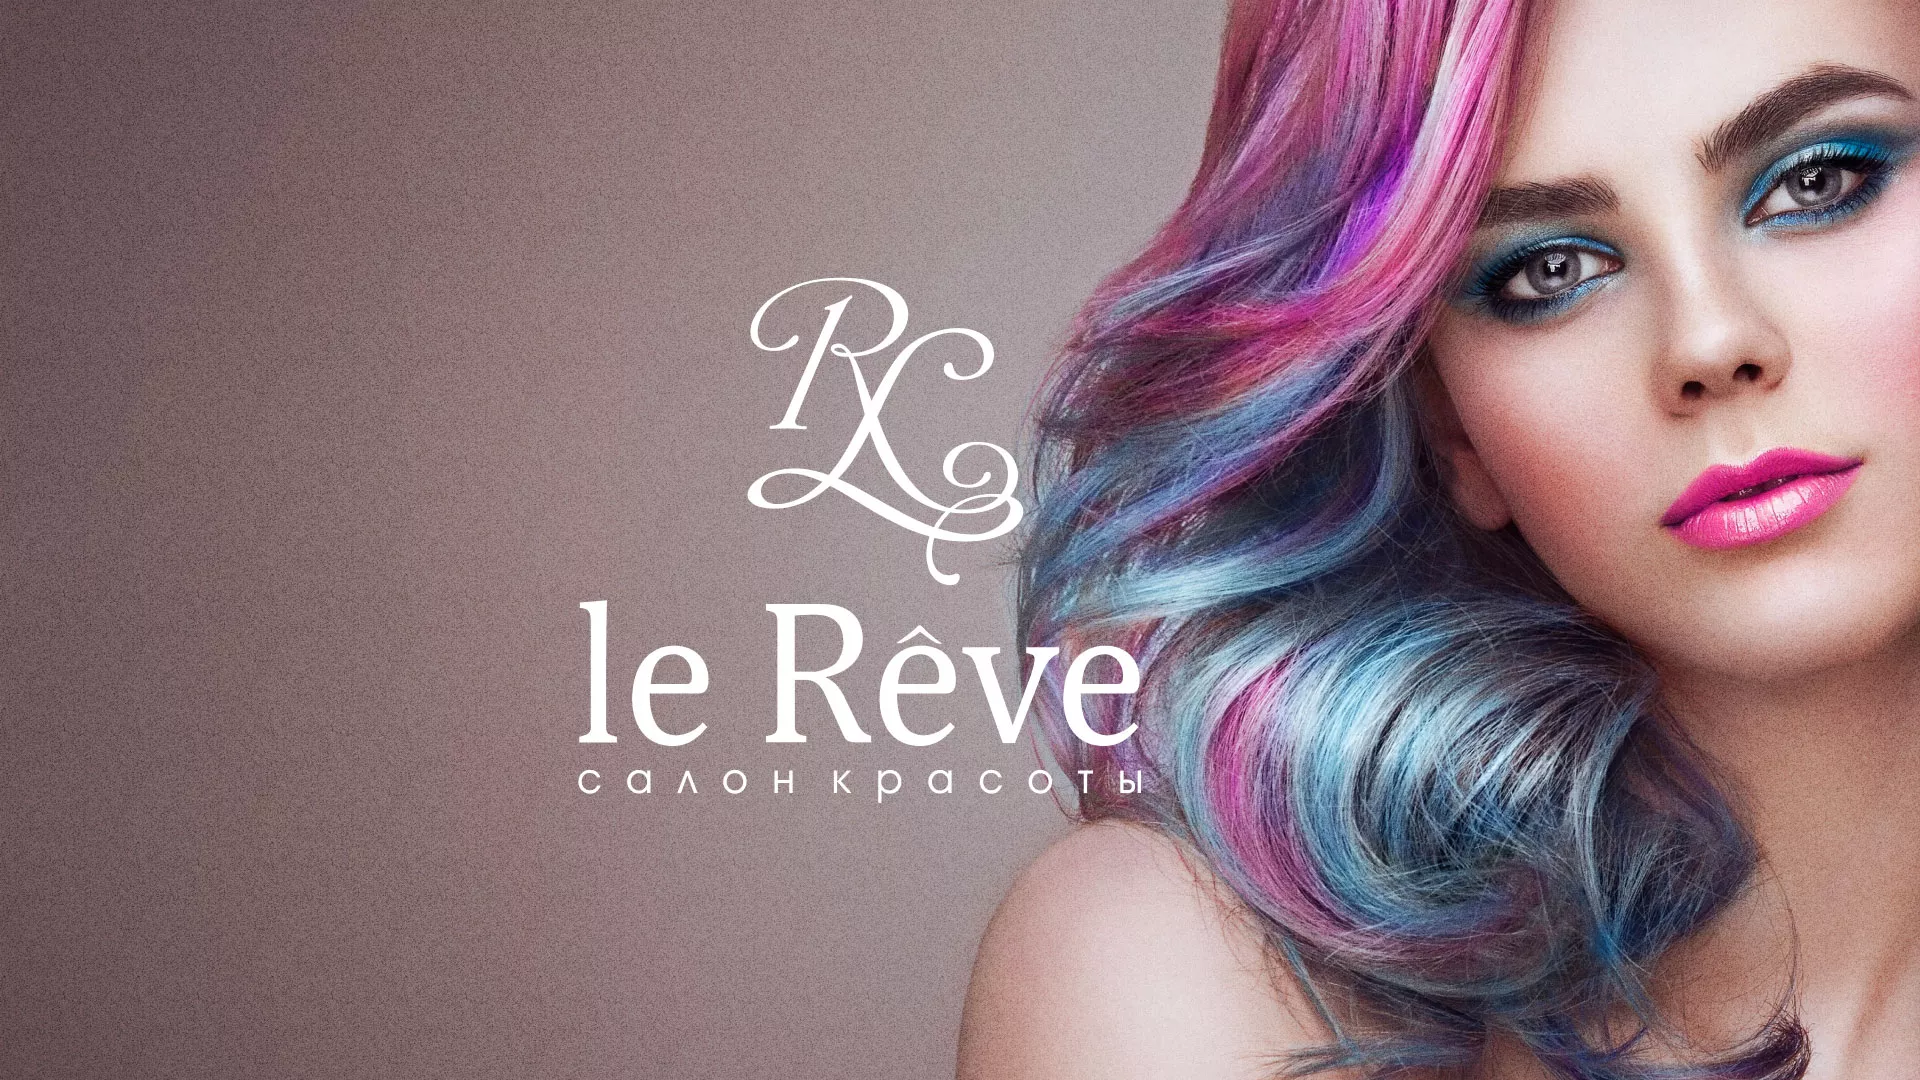 Создание сайта для салона красоты «Le Reve» в Ладушкине